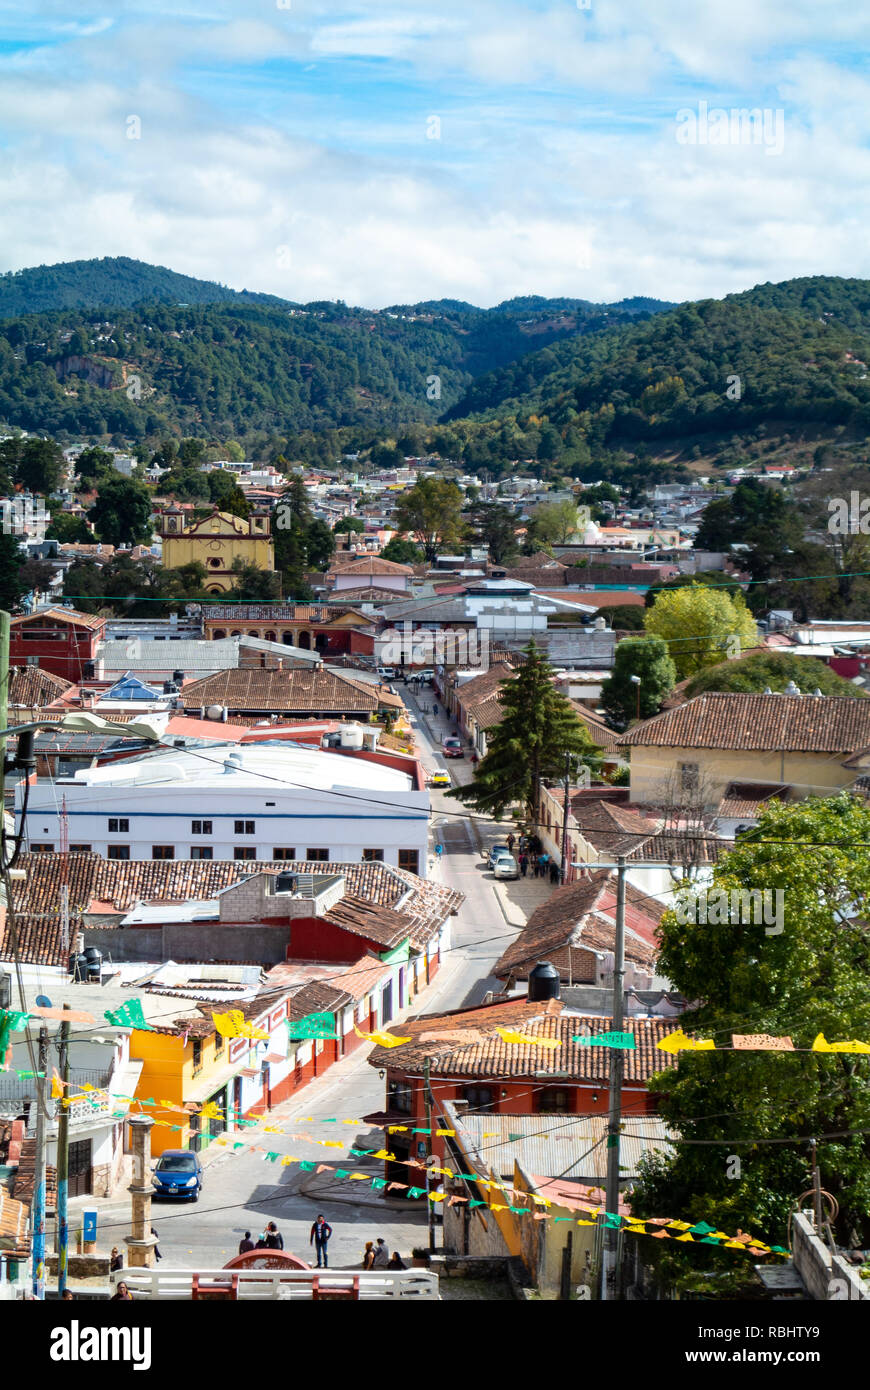 Cityscape of San Cristobal de las Casas, Chiapas, Mexico Stock Photo